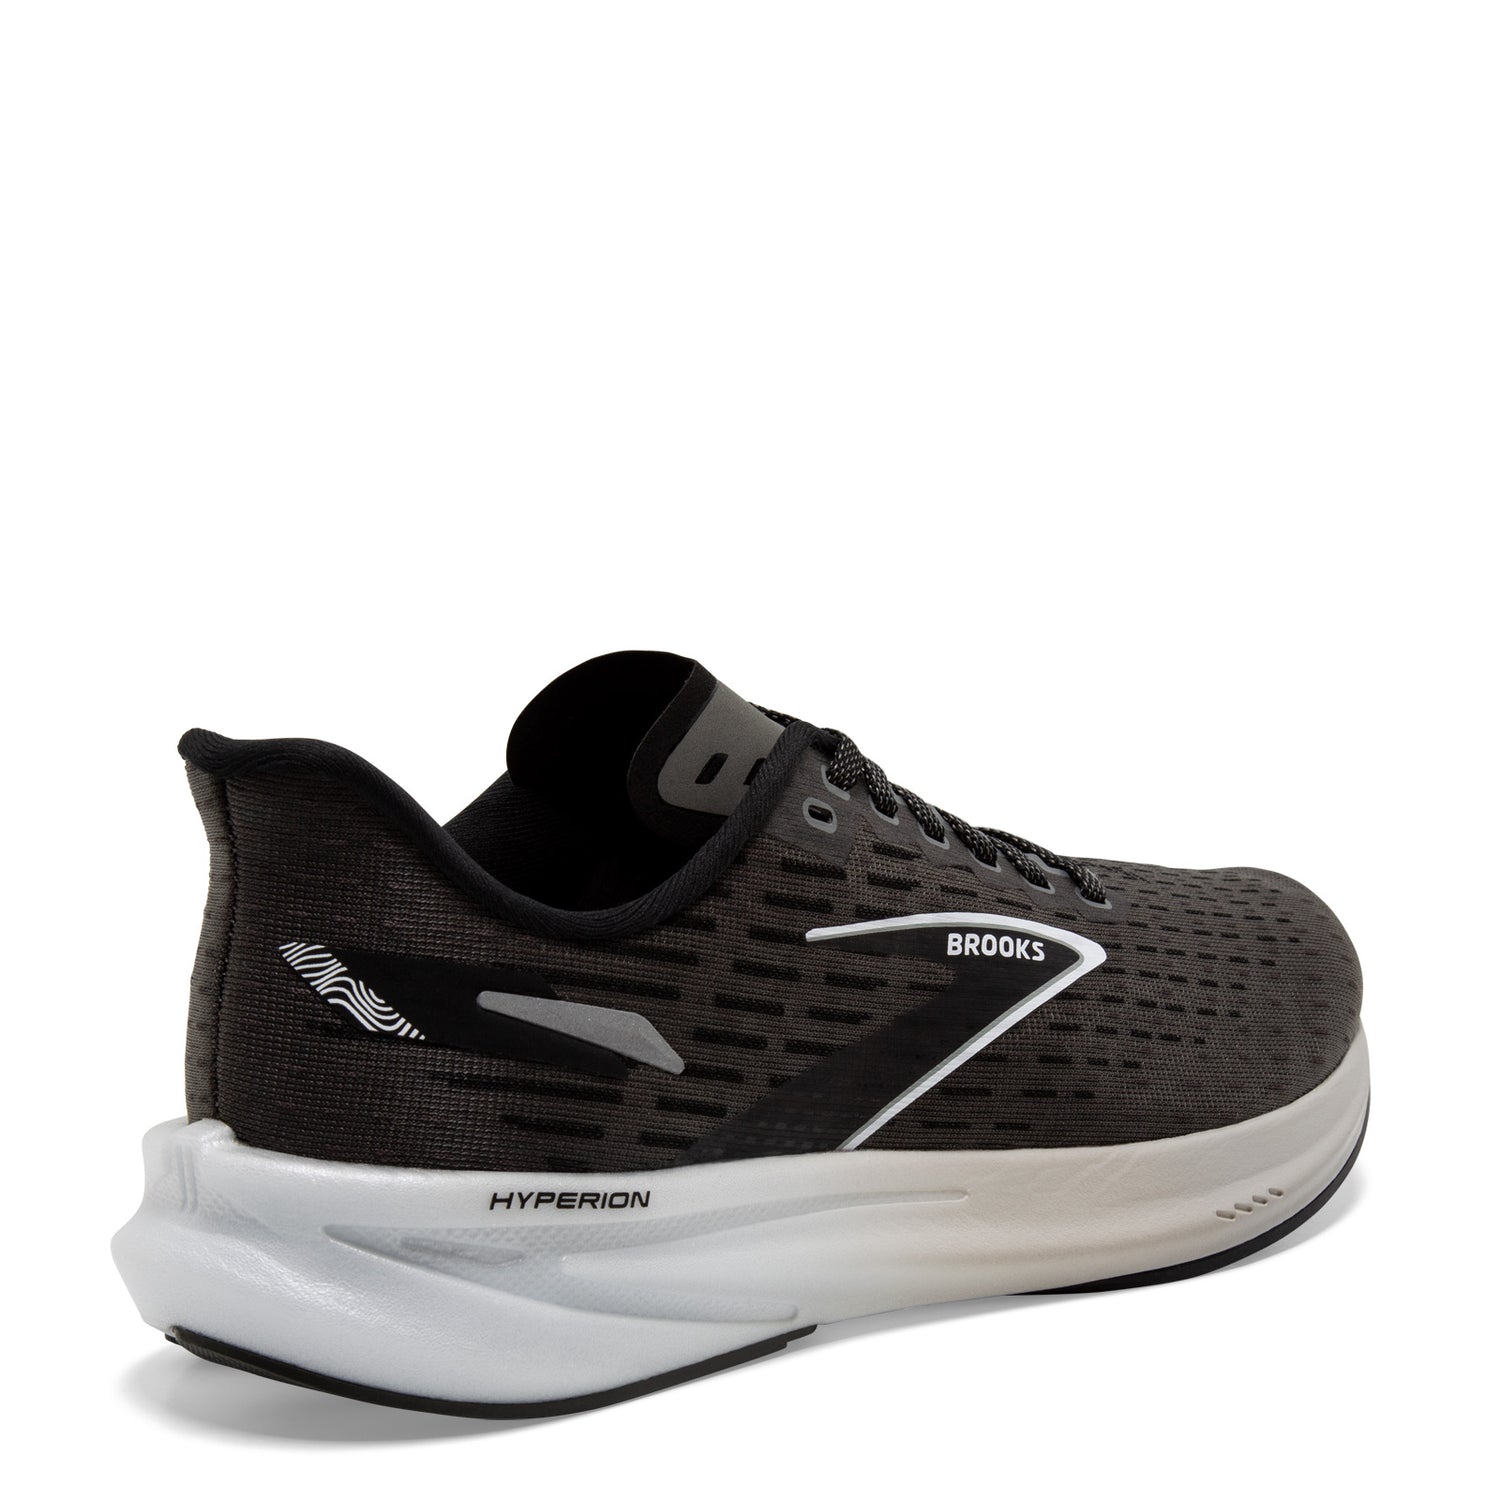 Peltz Shoes  Women's Brooks Hyperion Running Shoe Gunmetal/Black/White 120396 1B 008